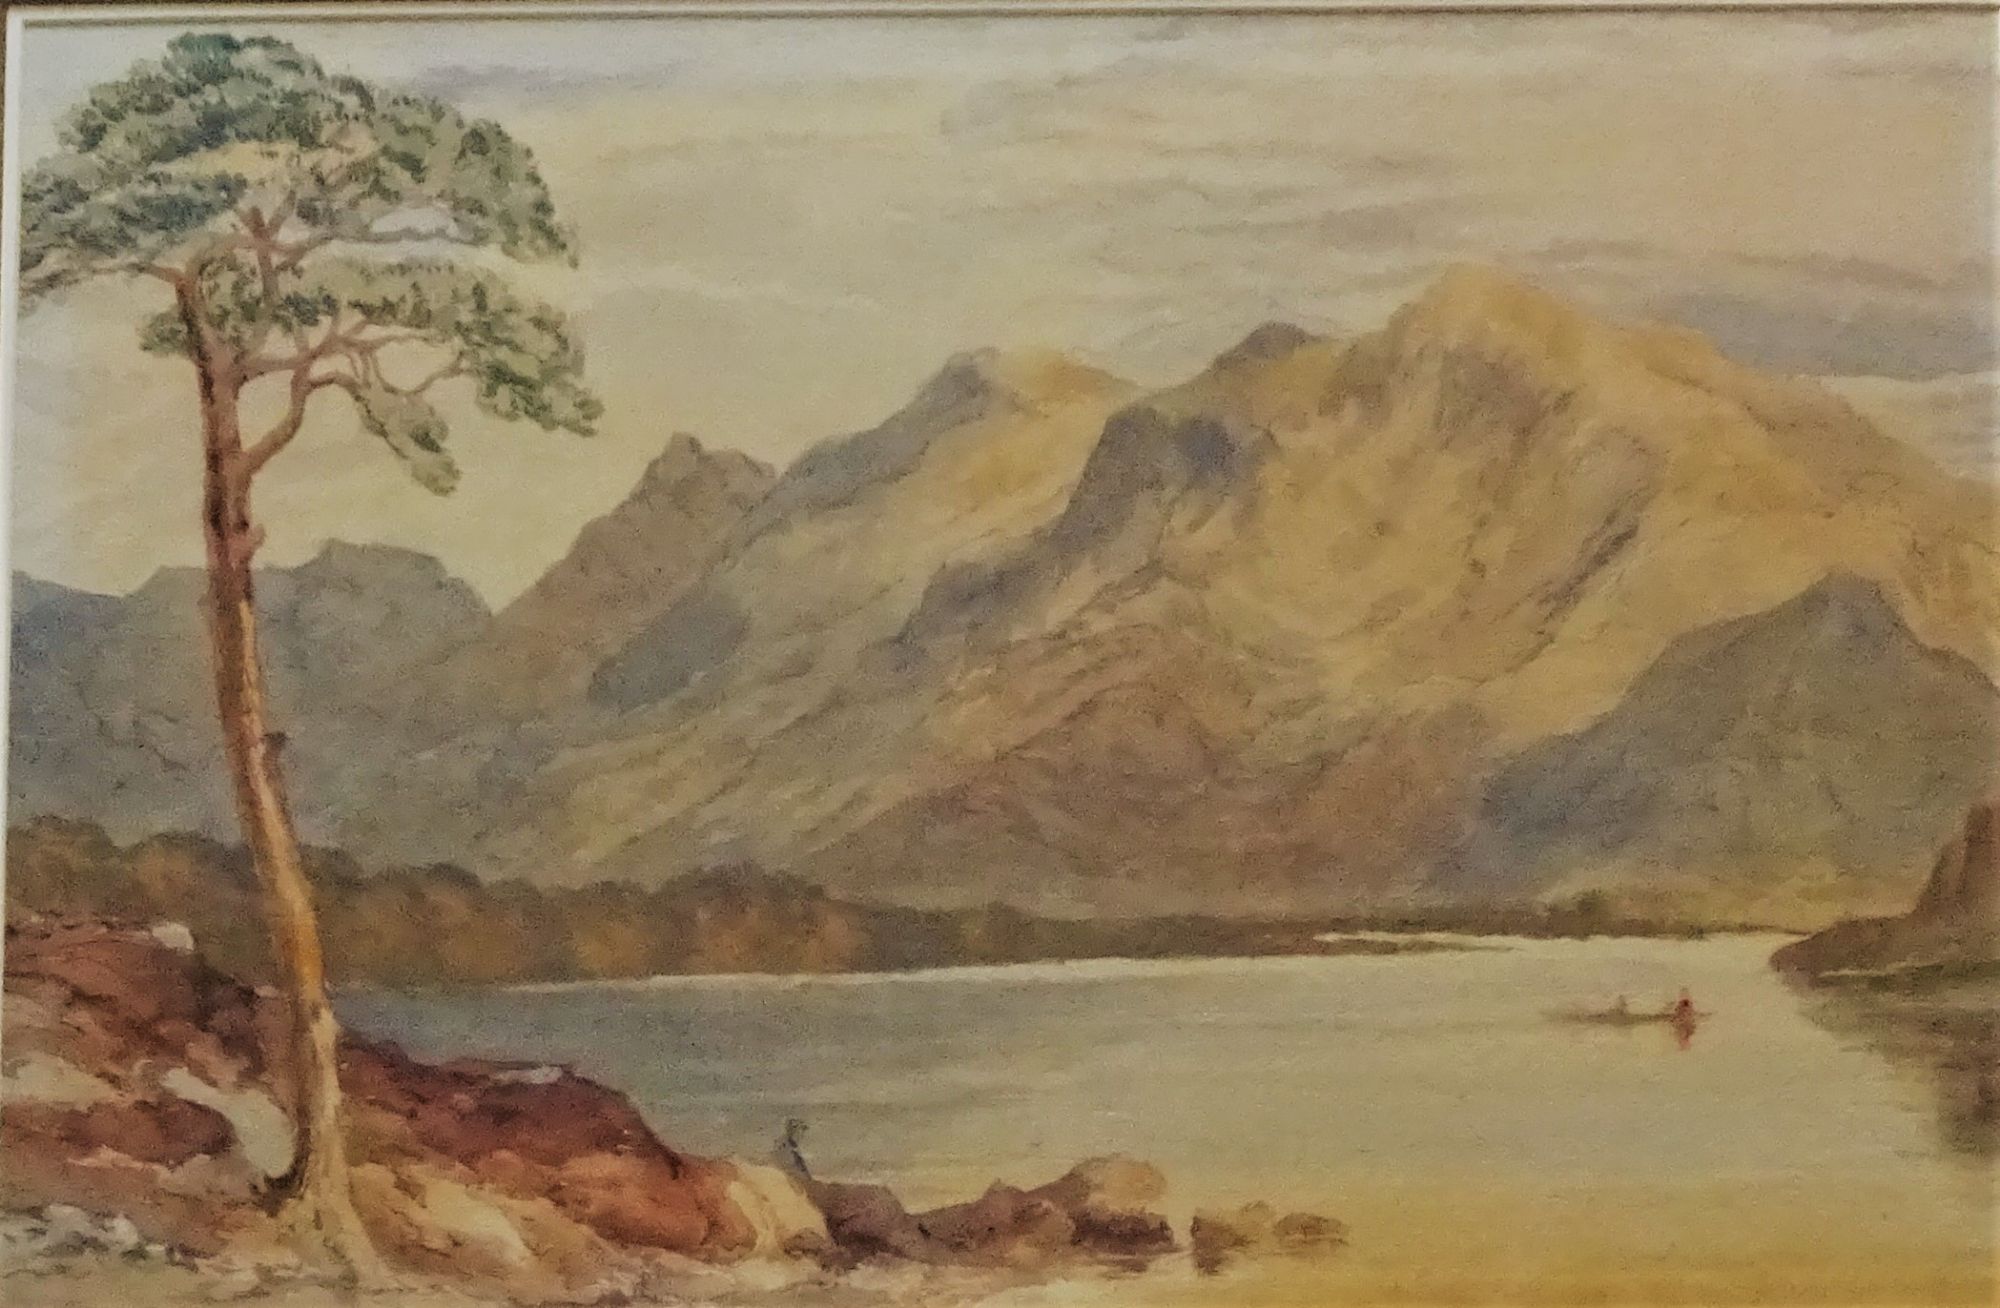 Scottish Highlands, William Leighton Leitch, c1860.